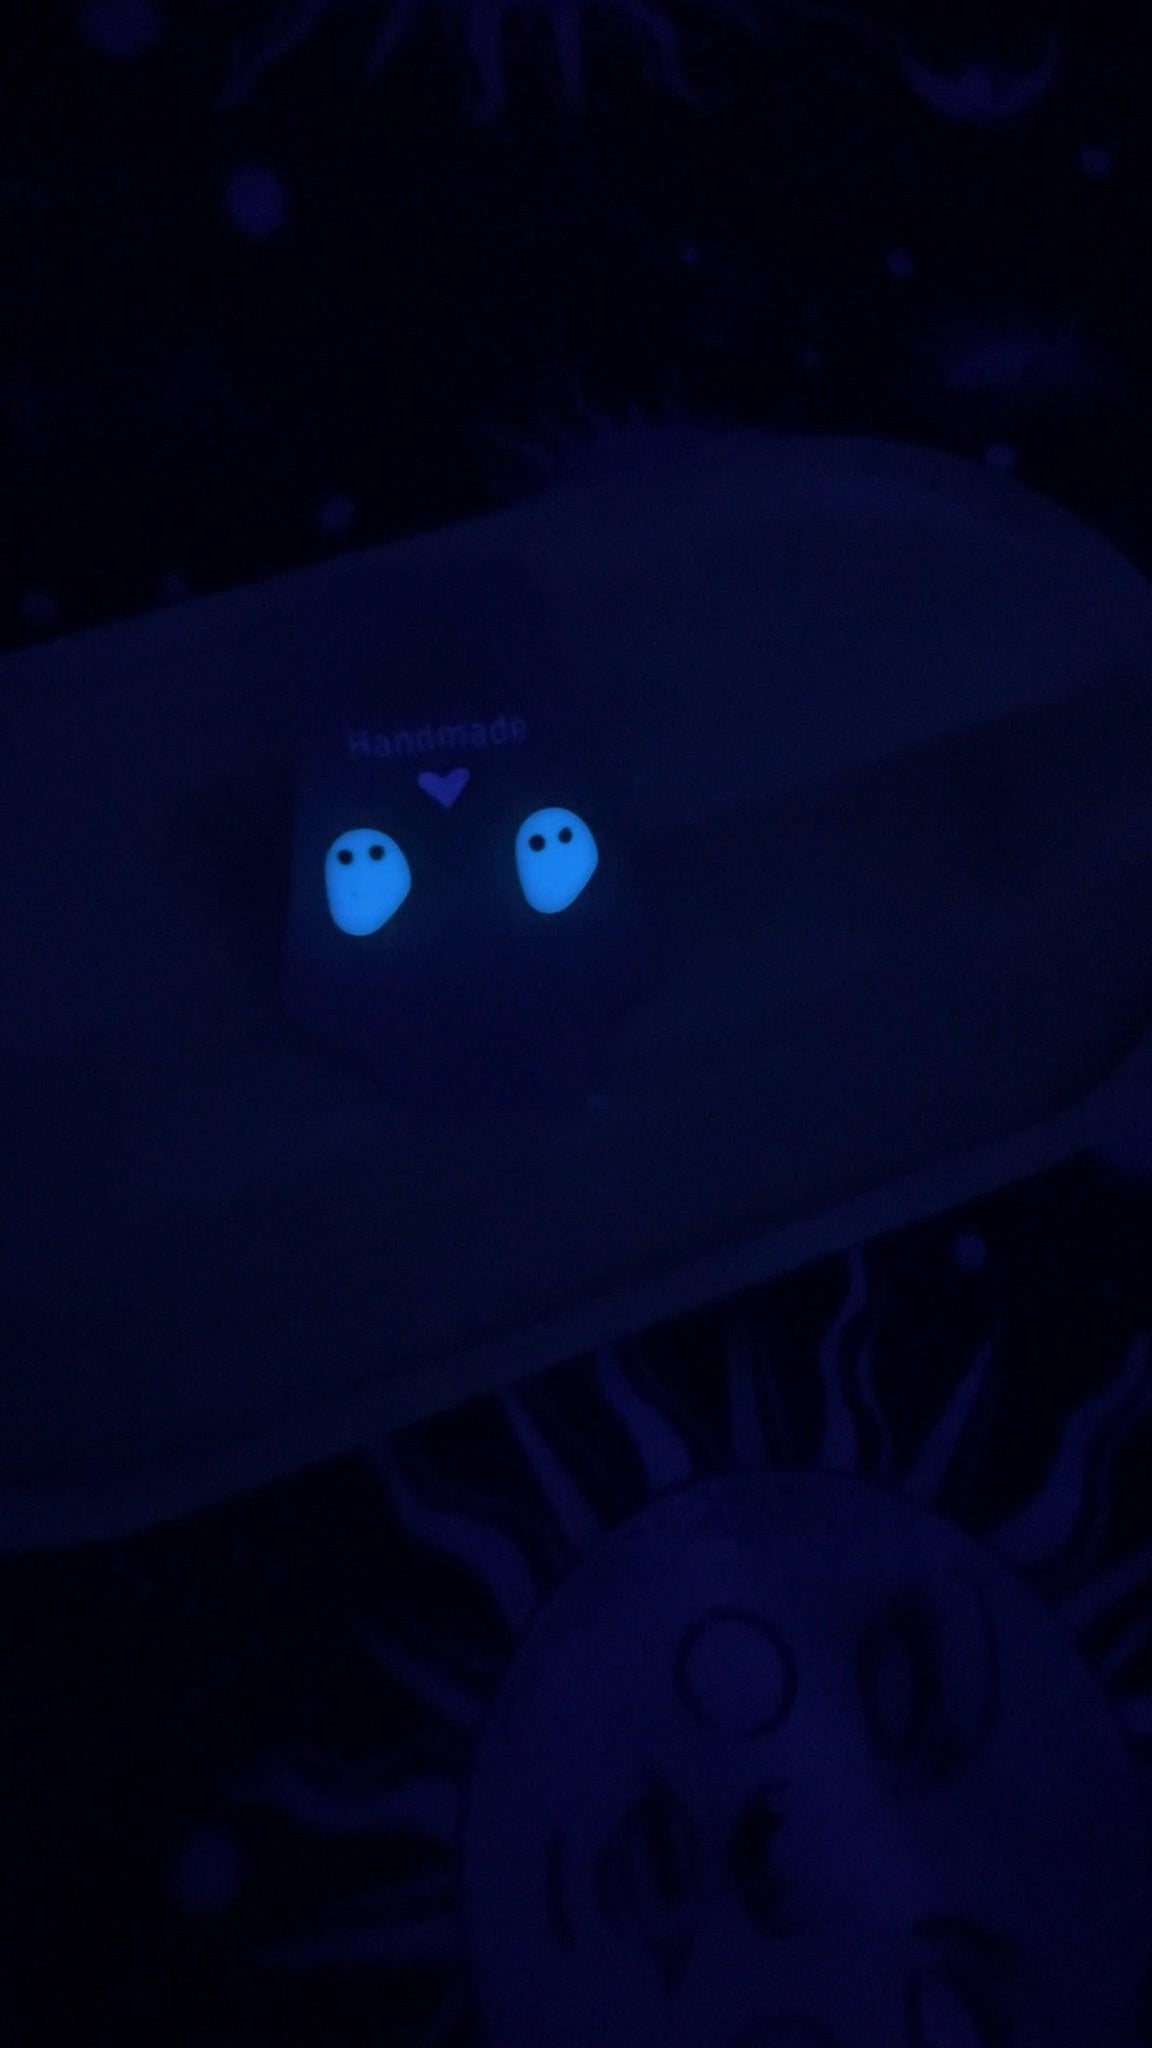 Handmade ghost earrings glowing in UV light 